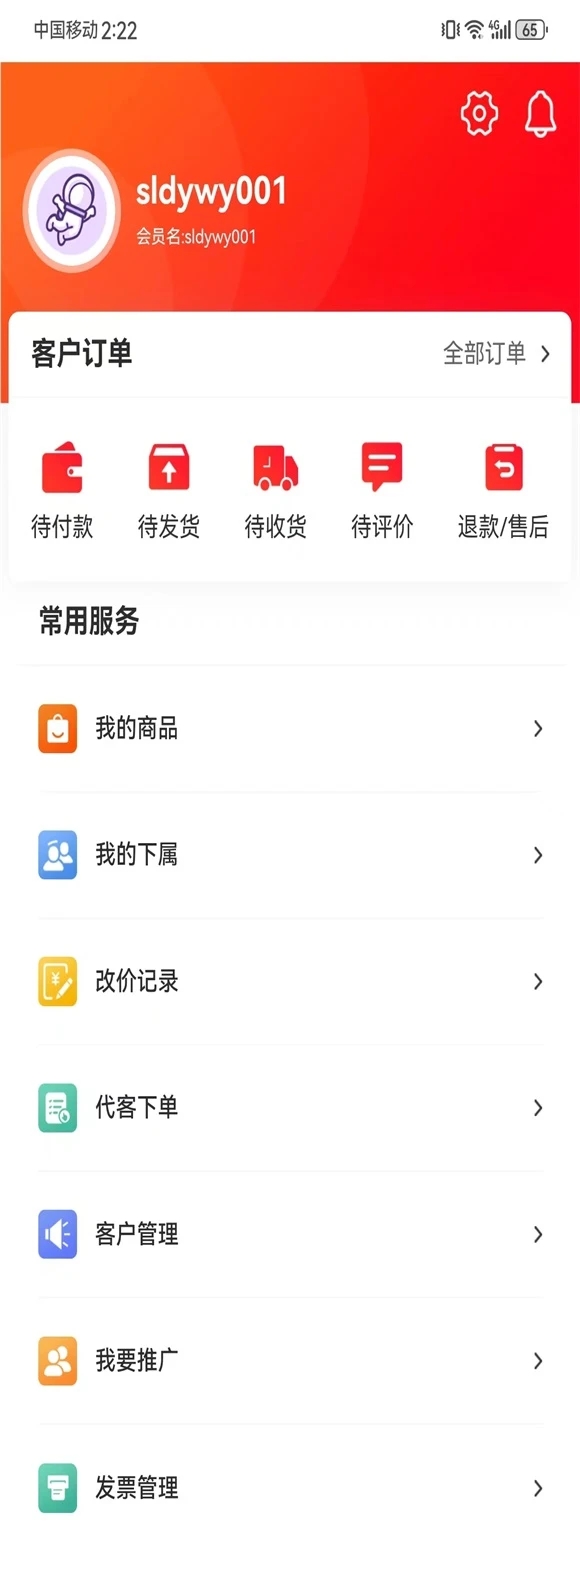 百明汇商城软件官方版图2: